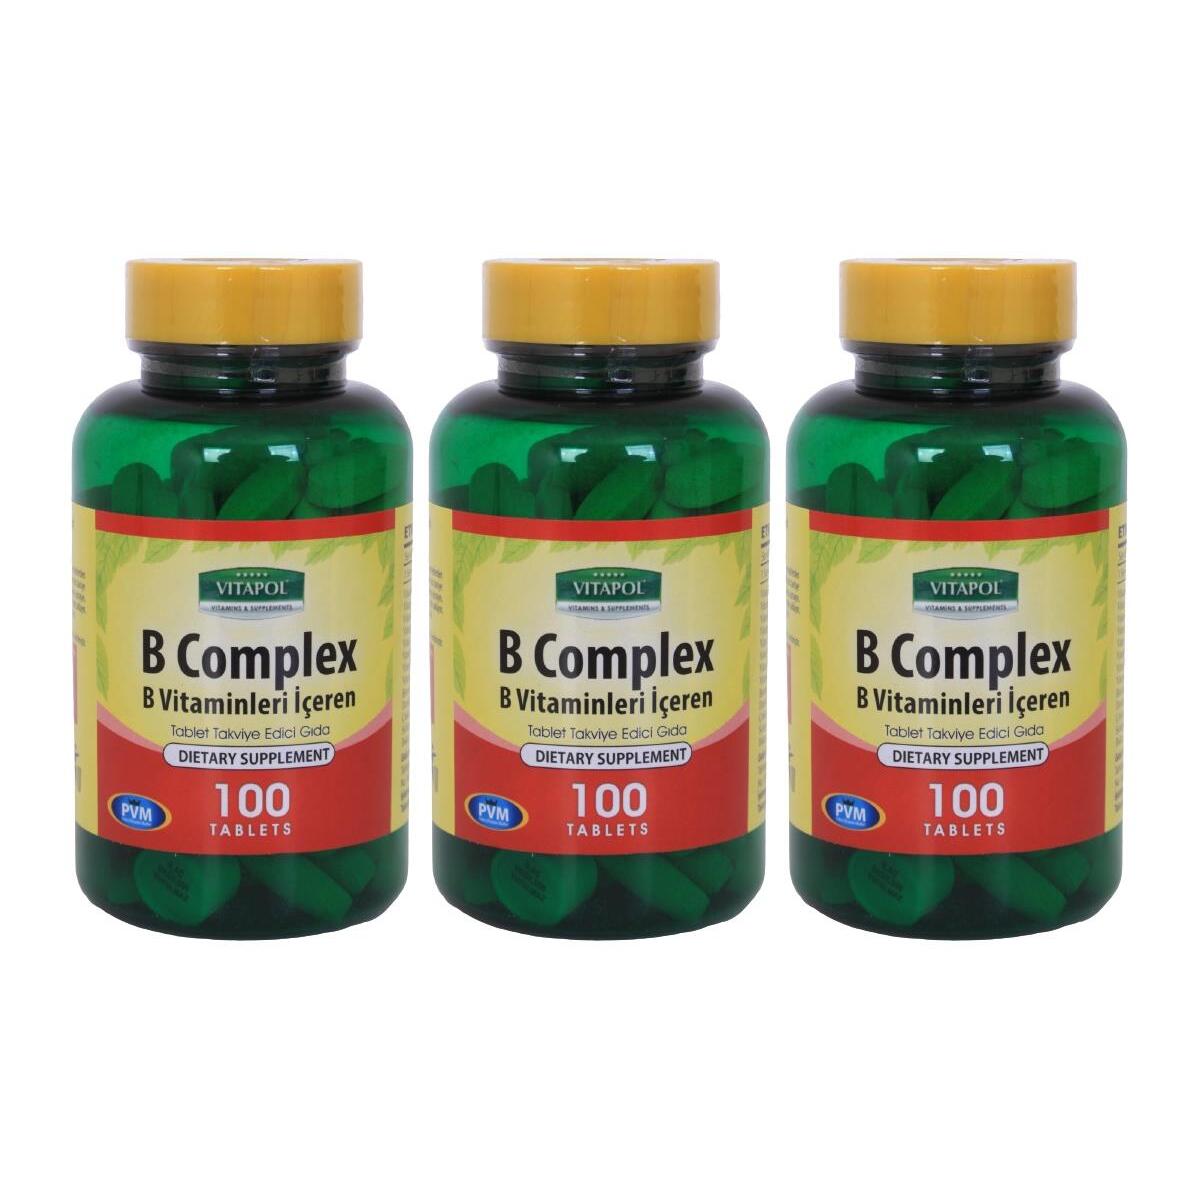 Vitapol B Vitamini Kompleks 3X100 Tablet Vitamin B Complex